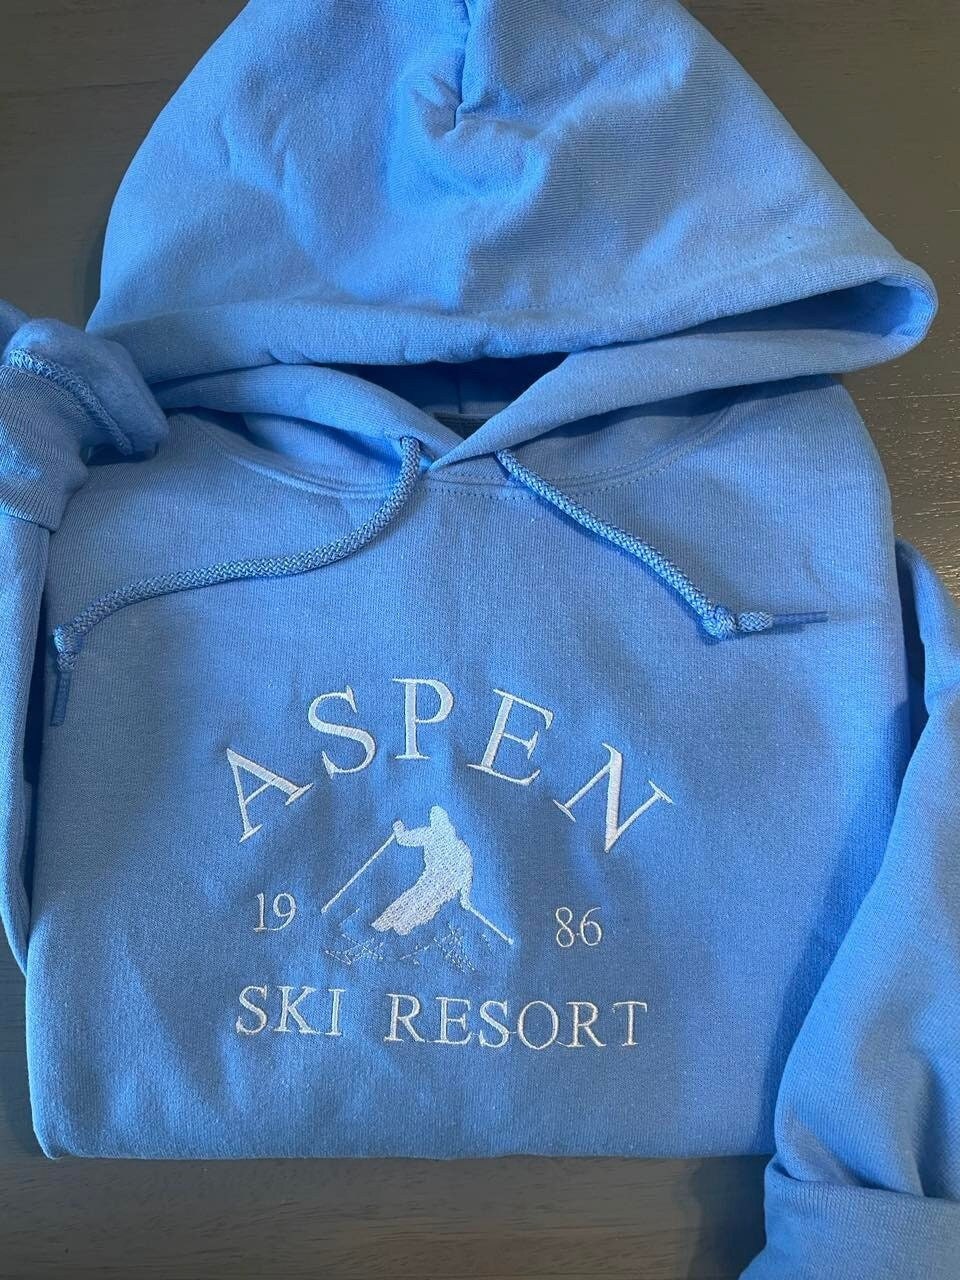 Aspen Ski Resort embroidered Hoodie, Aspen ski lover's design, Ski Resort hoodie; gift for shirt;  Aspen Colorado embroidered  Hoodies - MrEmbroideryGifts